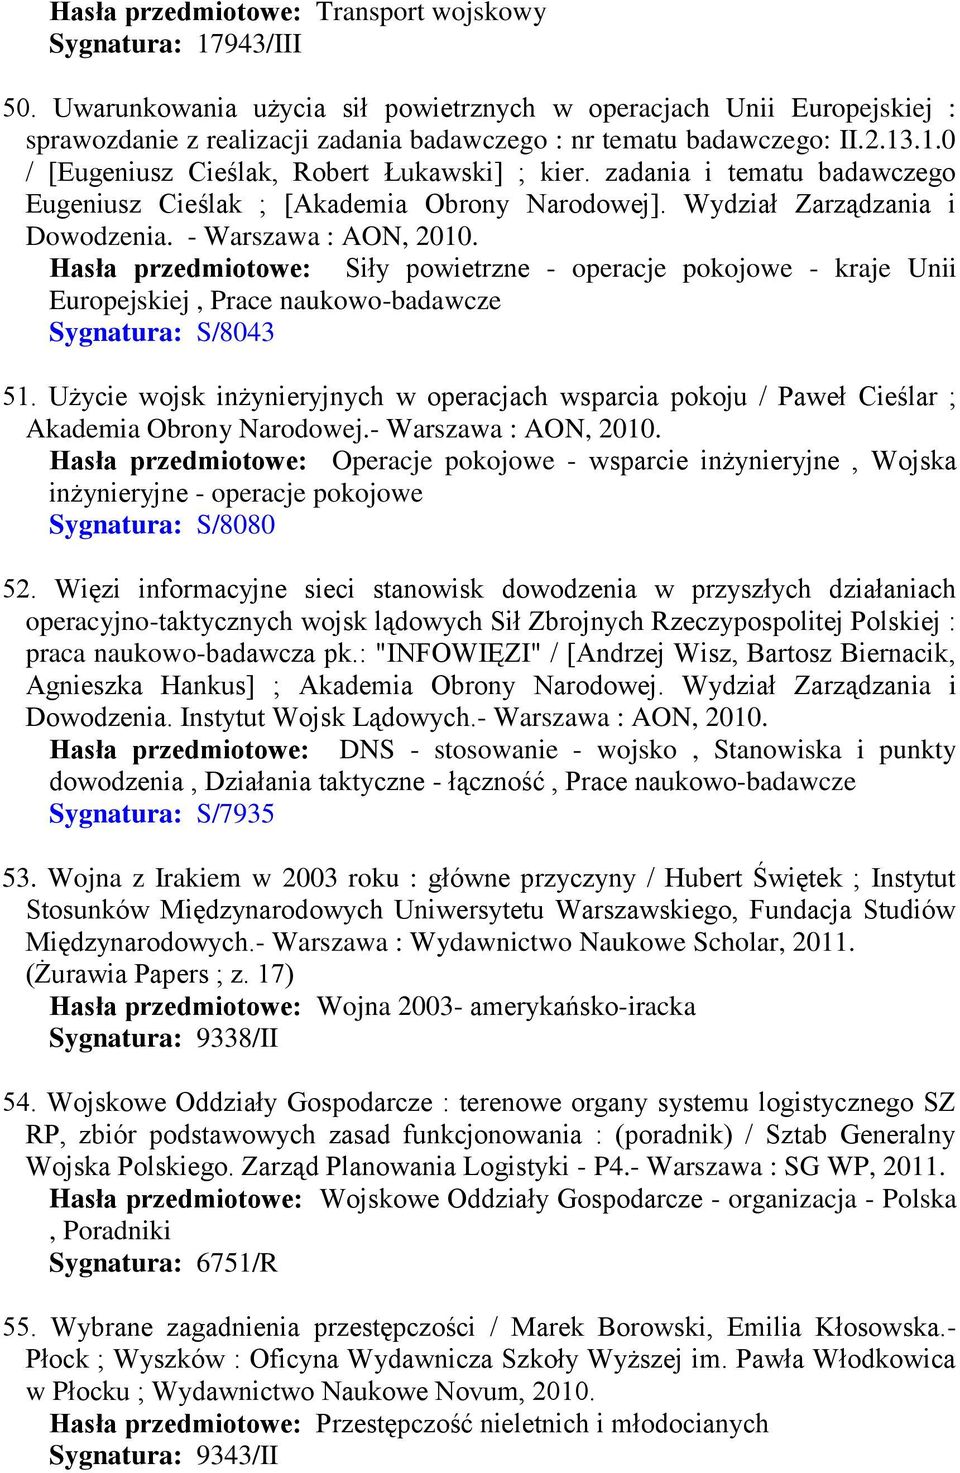 zadania i tematu badawczego Eugeniusz Cieślak ; [Akademia Obrony Narodowej]. Wydział Zarządzania i Dowodzenia. - Warszawa : AON, 2010.